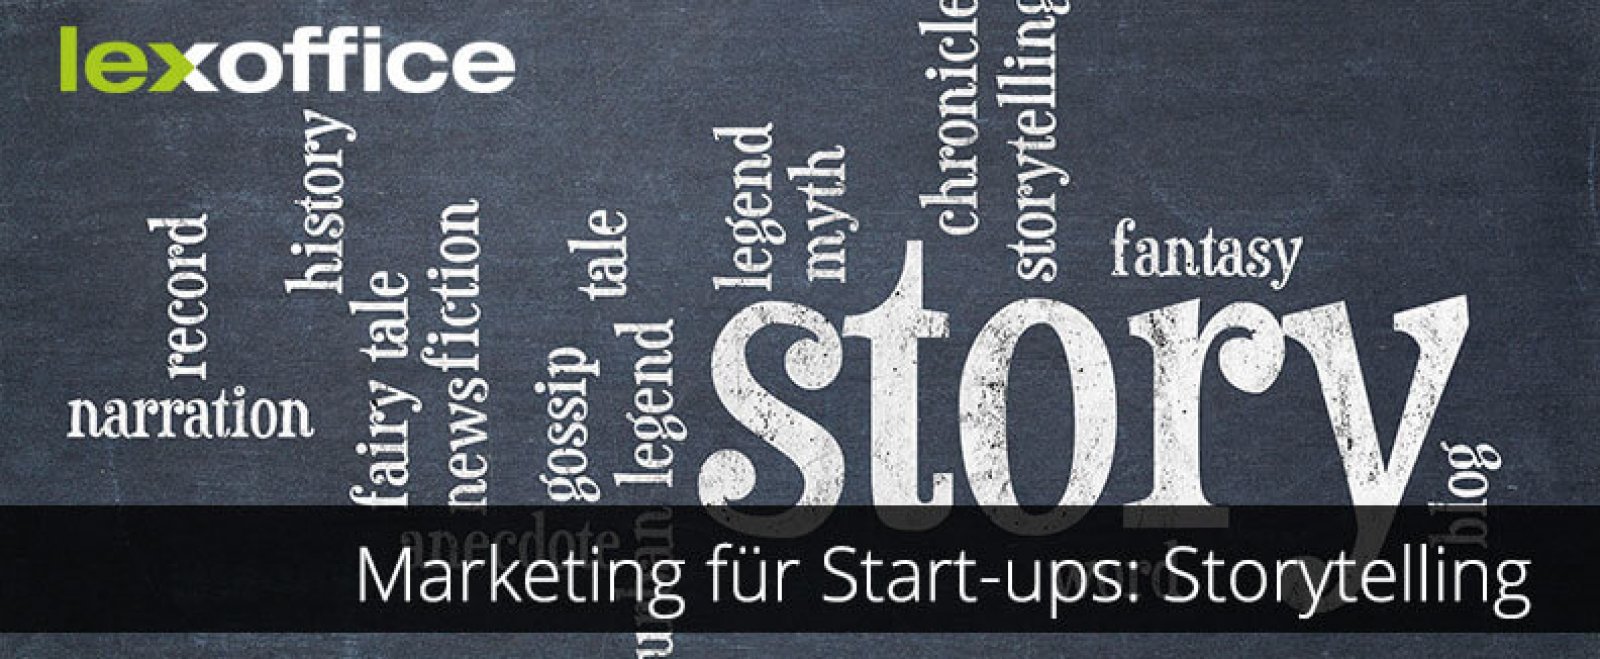 Marketing für Start-ups: Was ist Storytelling?